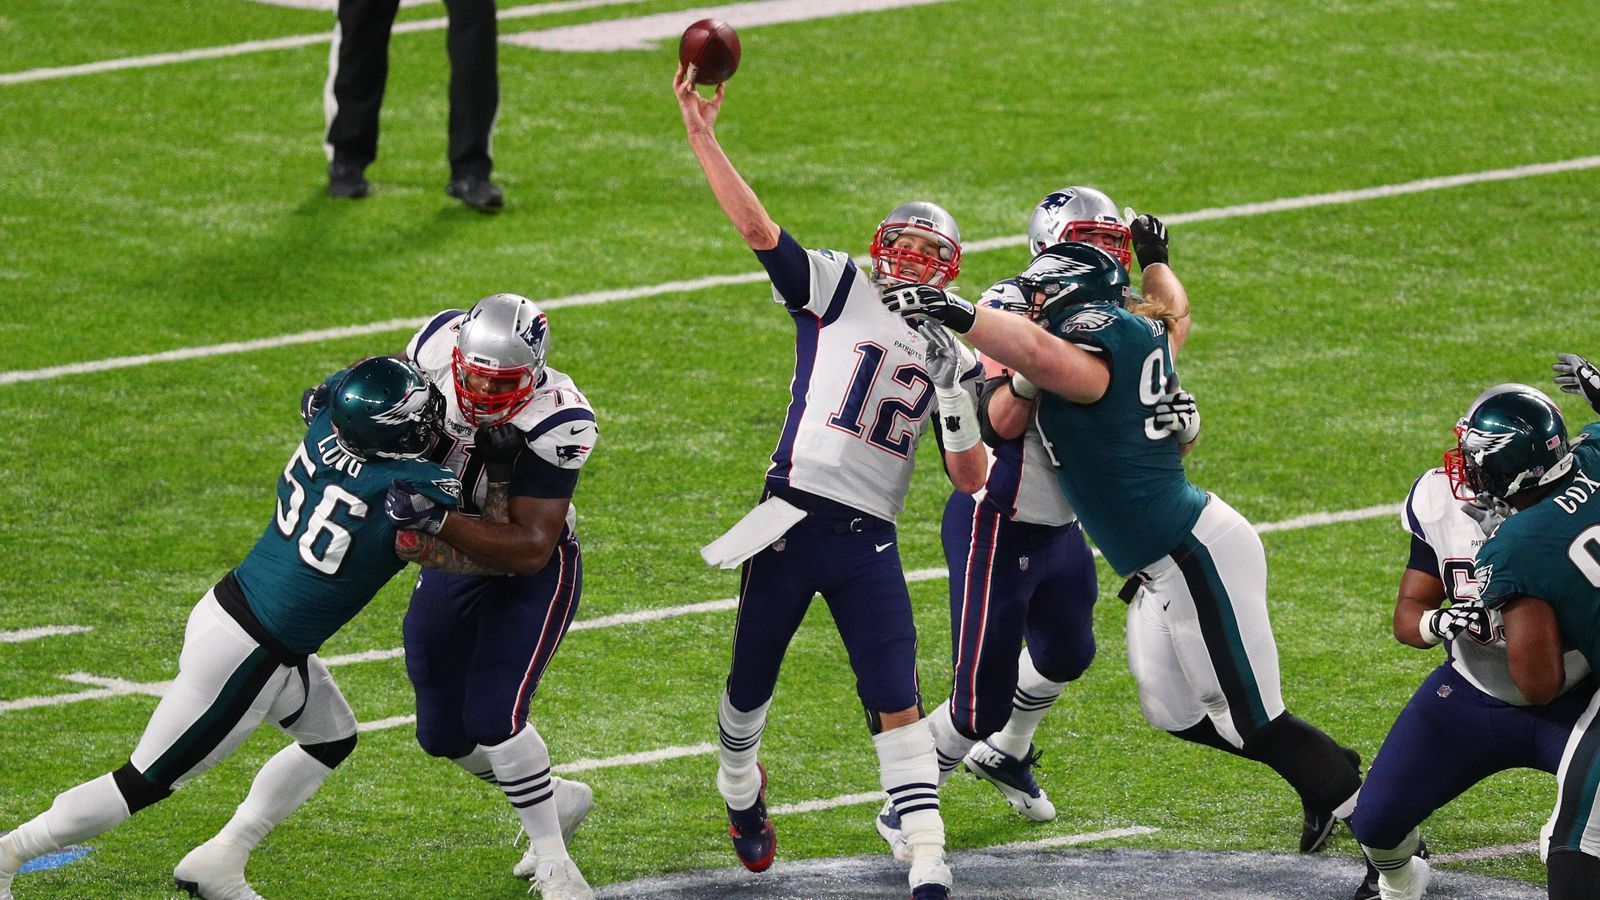 
                <strong>23. Rekord: Meiste Passing Yards in einem Playoff-Spiel</strong><br>
                Tom Brady hat auch die meisten Passing Yards in einem Playoff-Spiel. Im Super Bowl LII gegen die Philadelphia Eagles warf er für 502 Yards, was die 33:41-Niederlage aber auch nicht verhinderte.
              